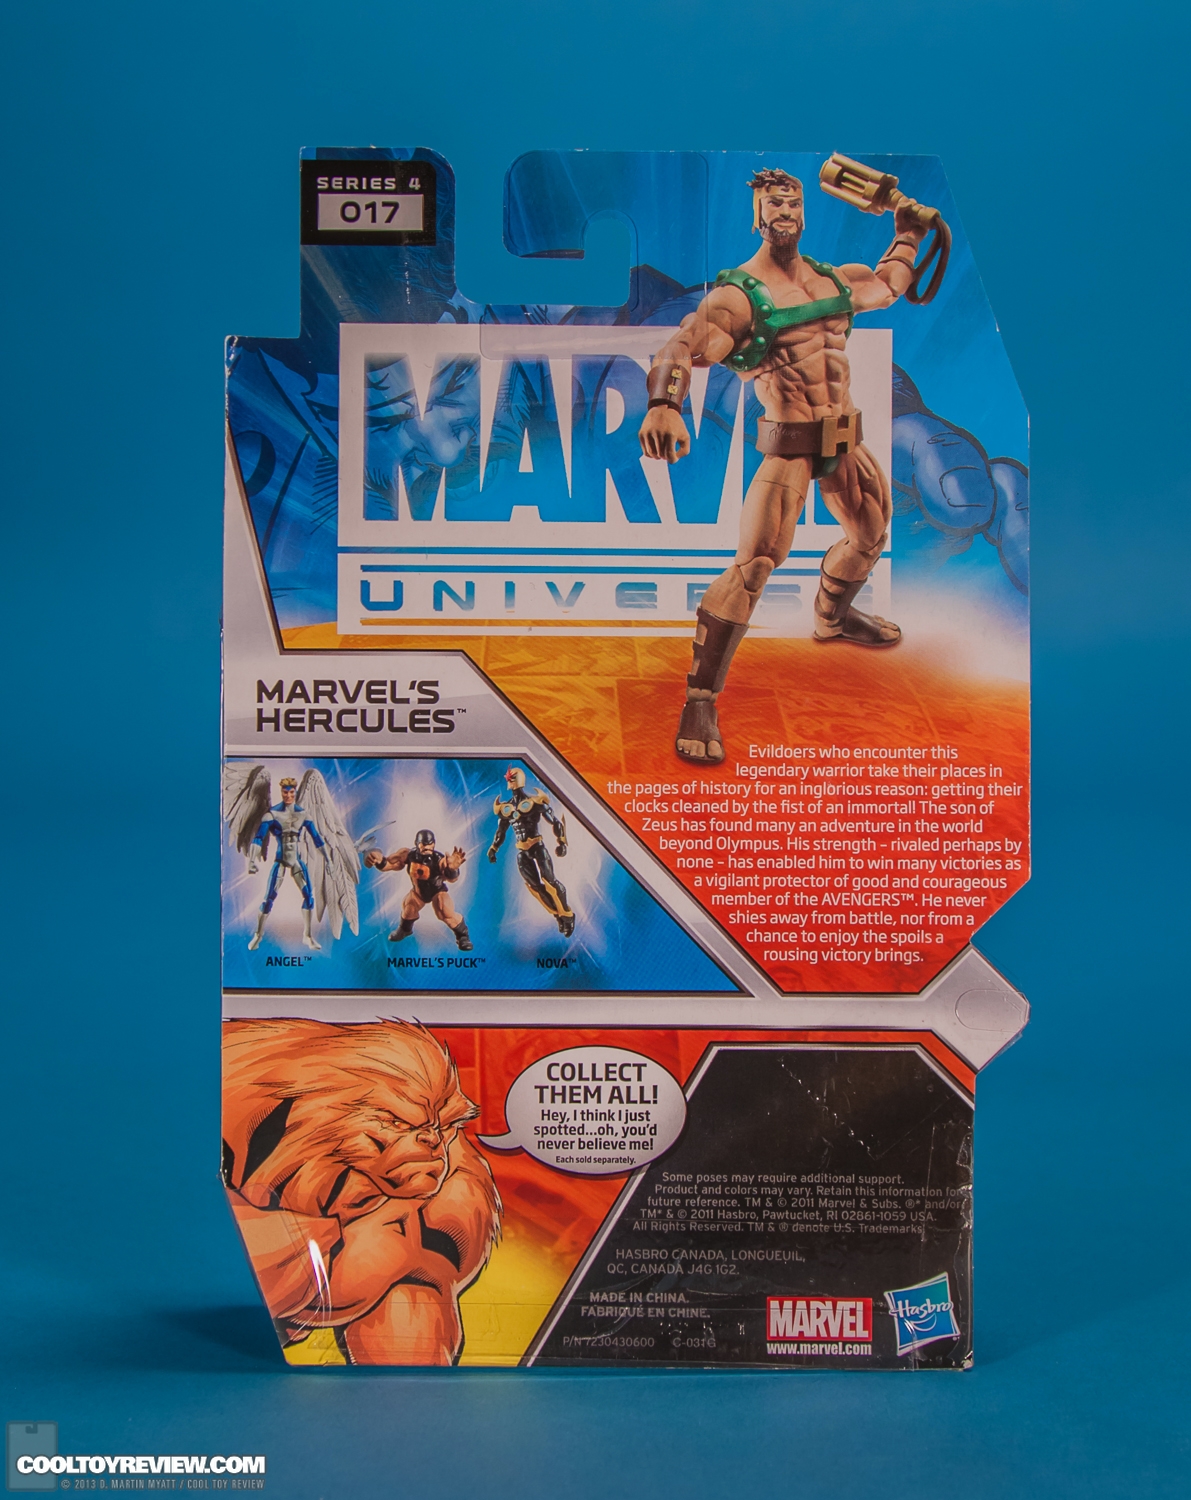 Marvel_Universe_Hercules_Hasbro-018.jpg